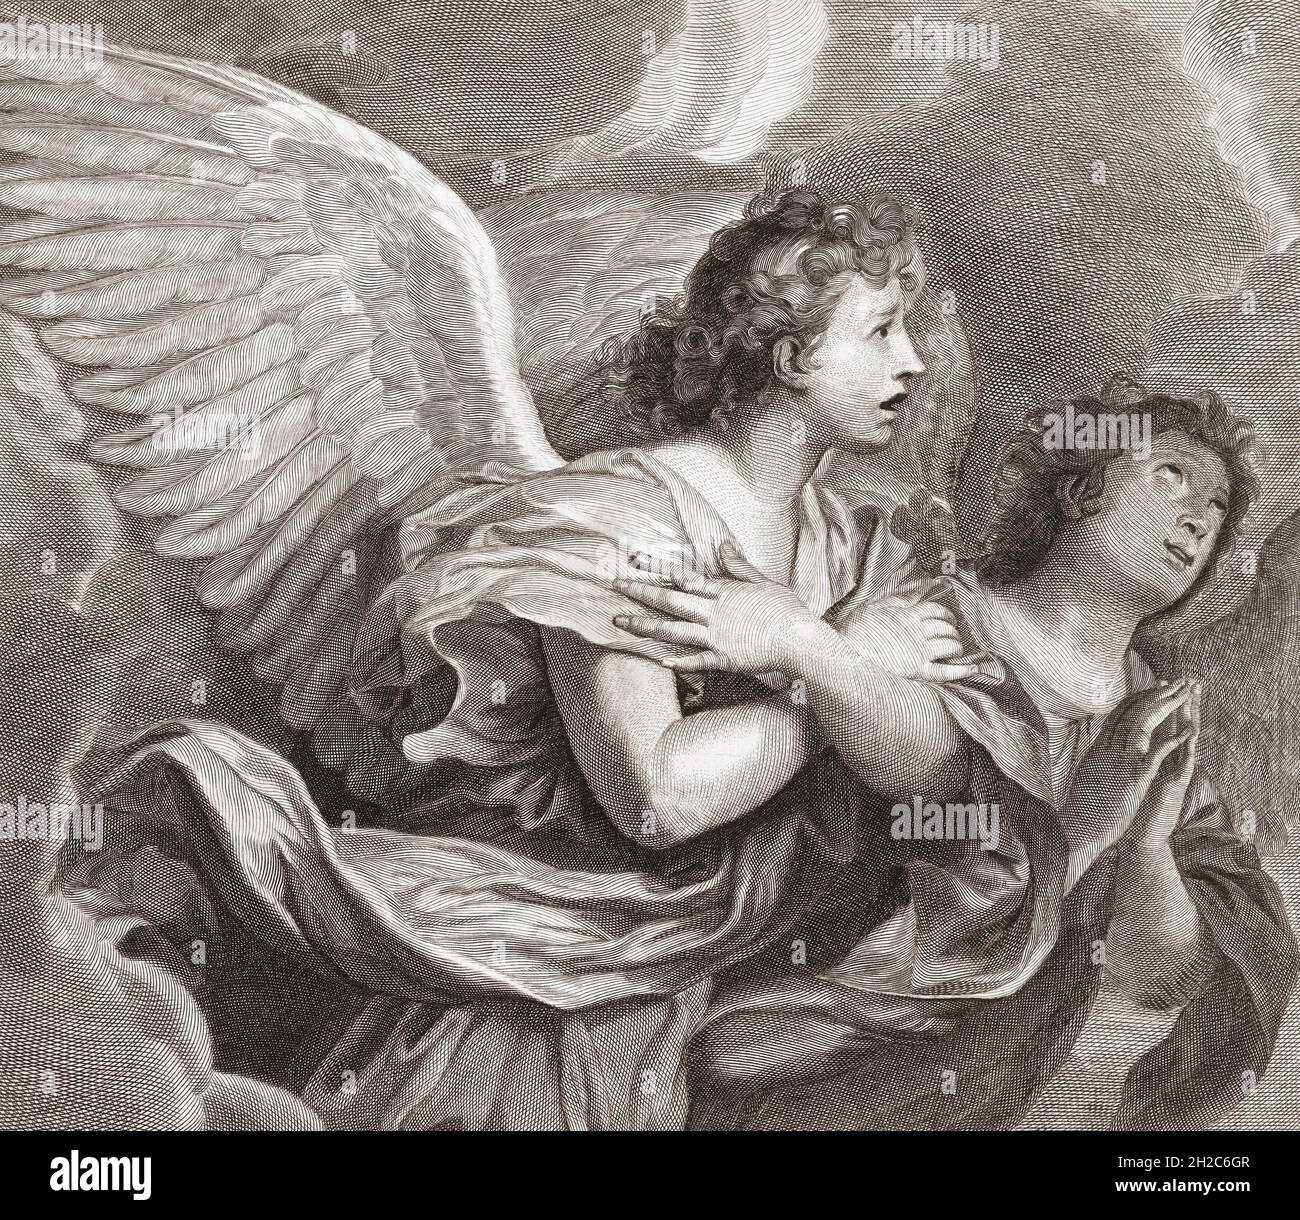 Zwei Engel. Nach einem Werk von Pieter Willem van Megen aus dem 18. Jahrhundert. Stockfoto